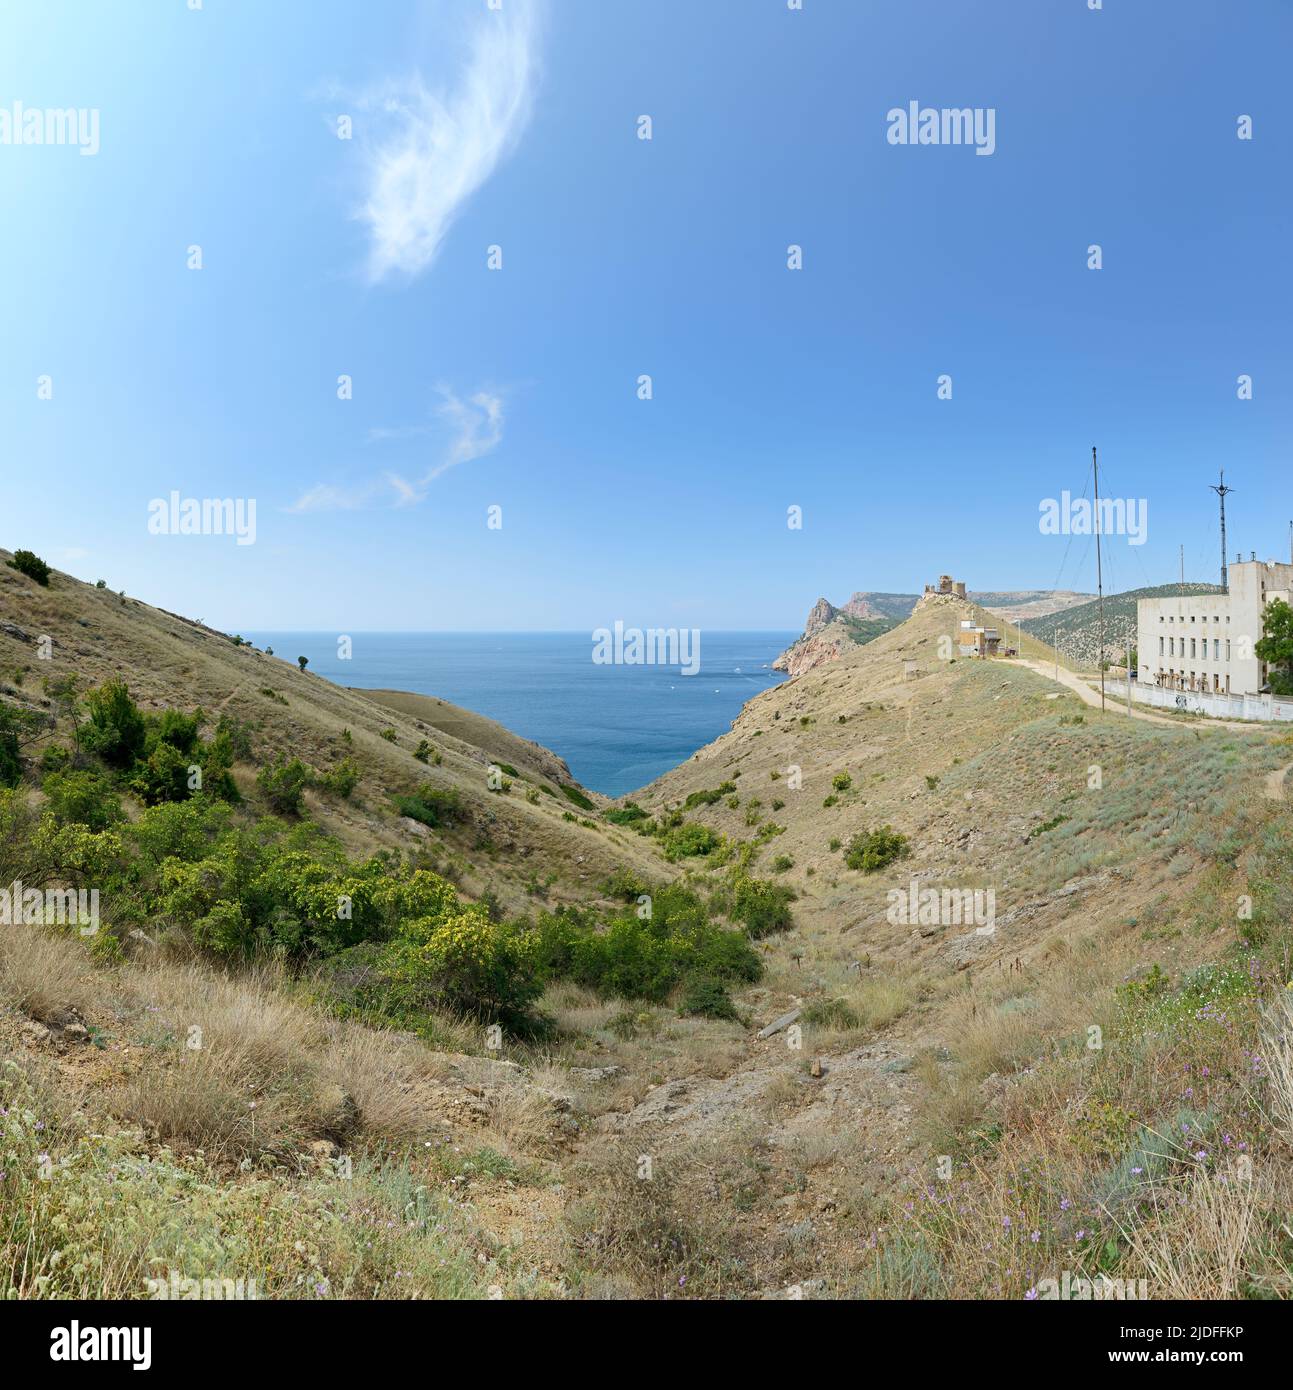 Vista del paisaje de colinas con barrancos hacia la fortaleza genovesa en los acantilados al oeste de Balaklava, Crimea, Rusia. Foto de stock